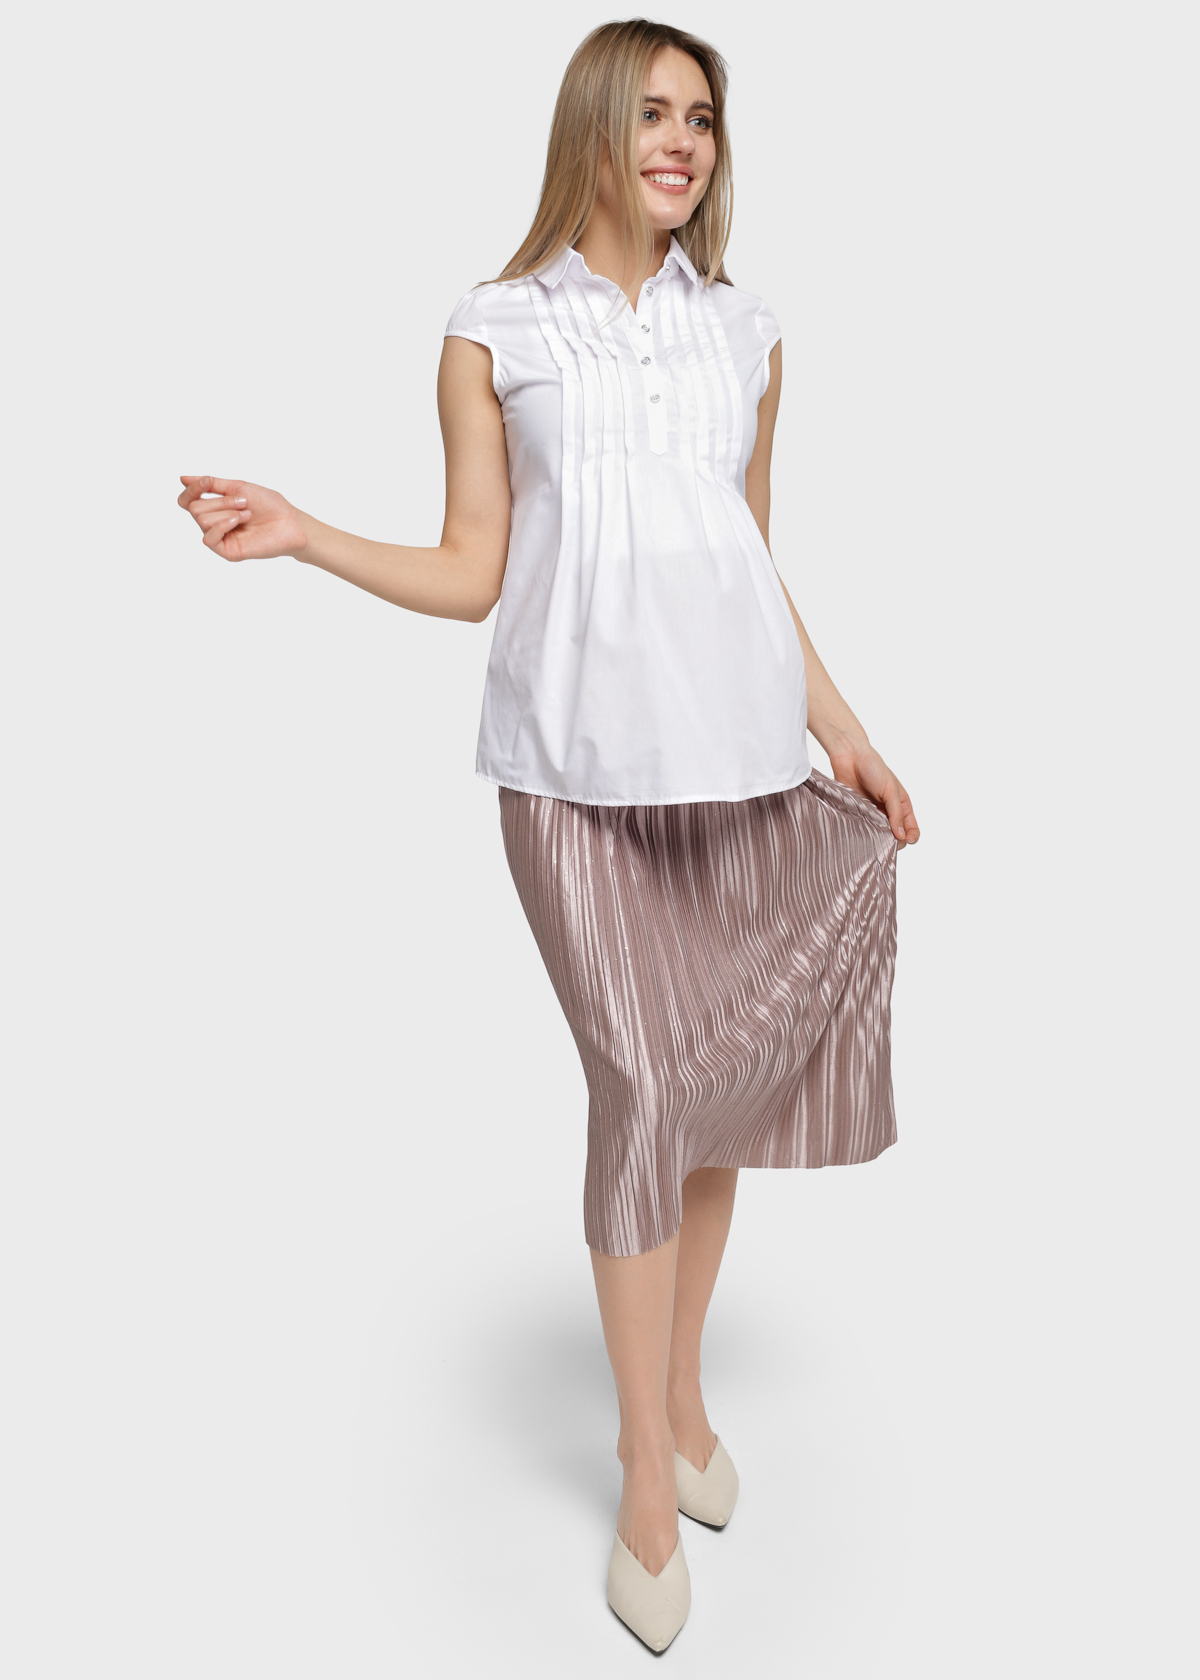 Skirt "Snezhana" for pregnant women; color: beige